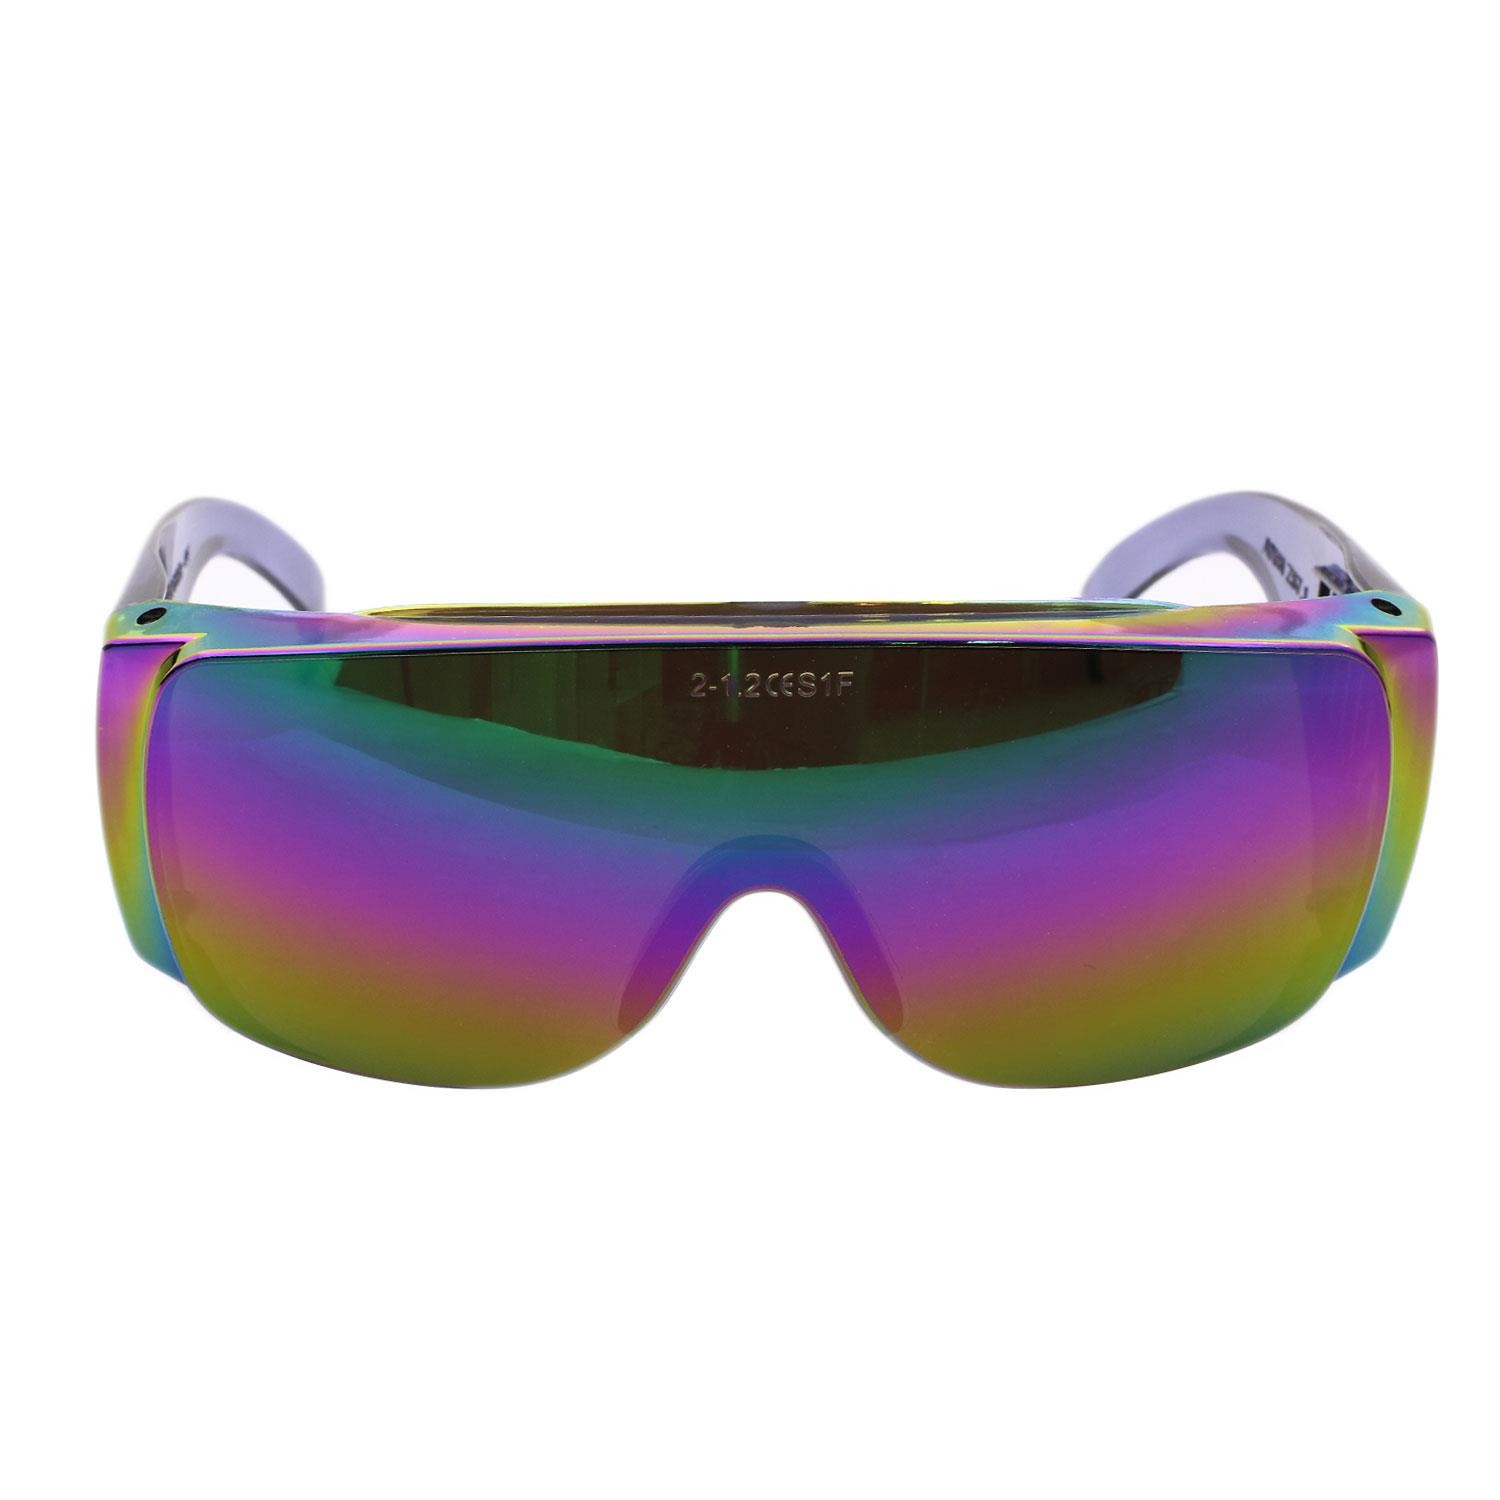 İş Güvenlik Gözlüğü Çapak Koruyucu Gözlük S700 Aynalı Gökkuşağı